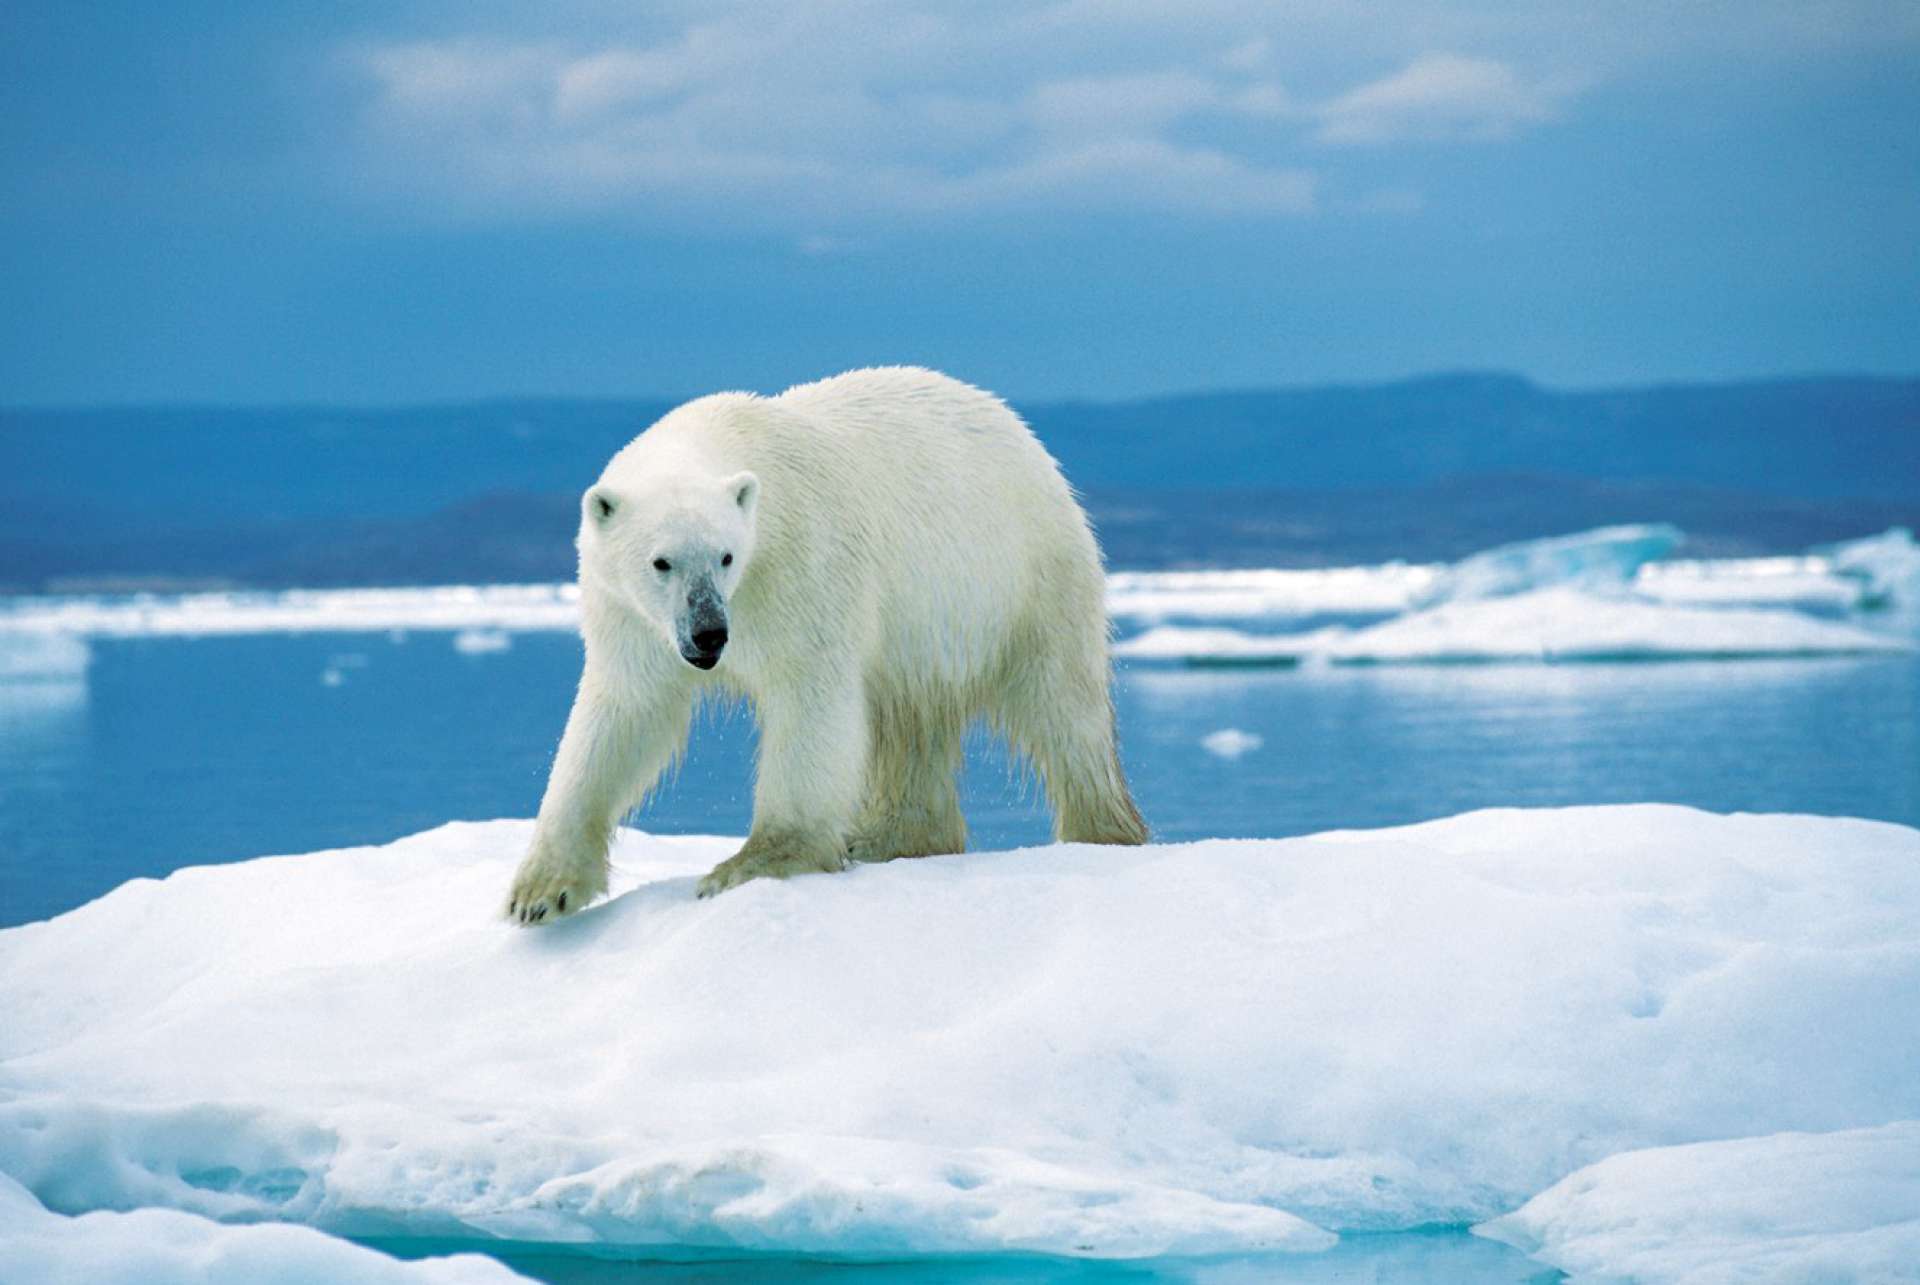 O Ursus maritmus, nome científico do urso polar